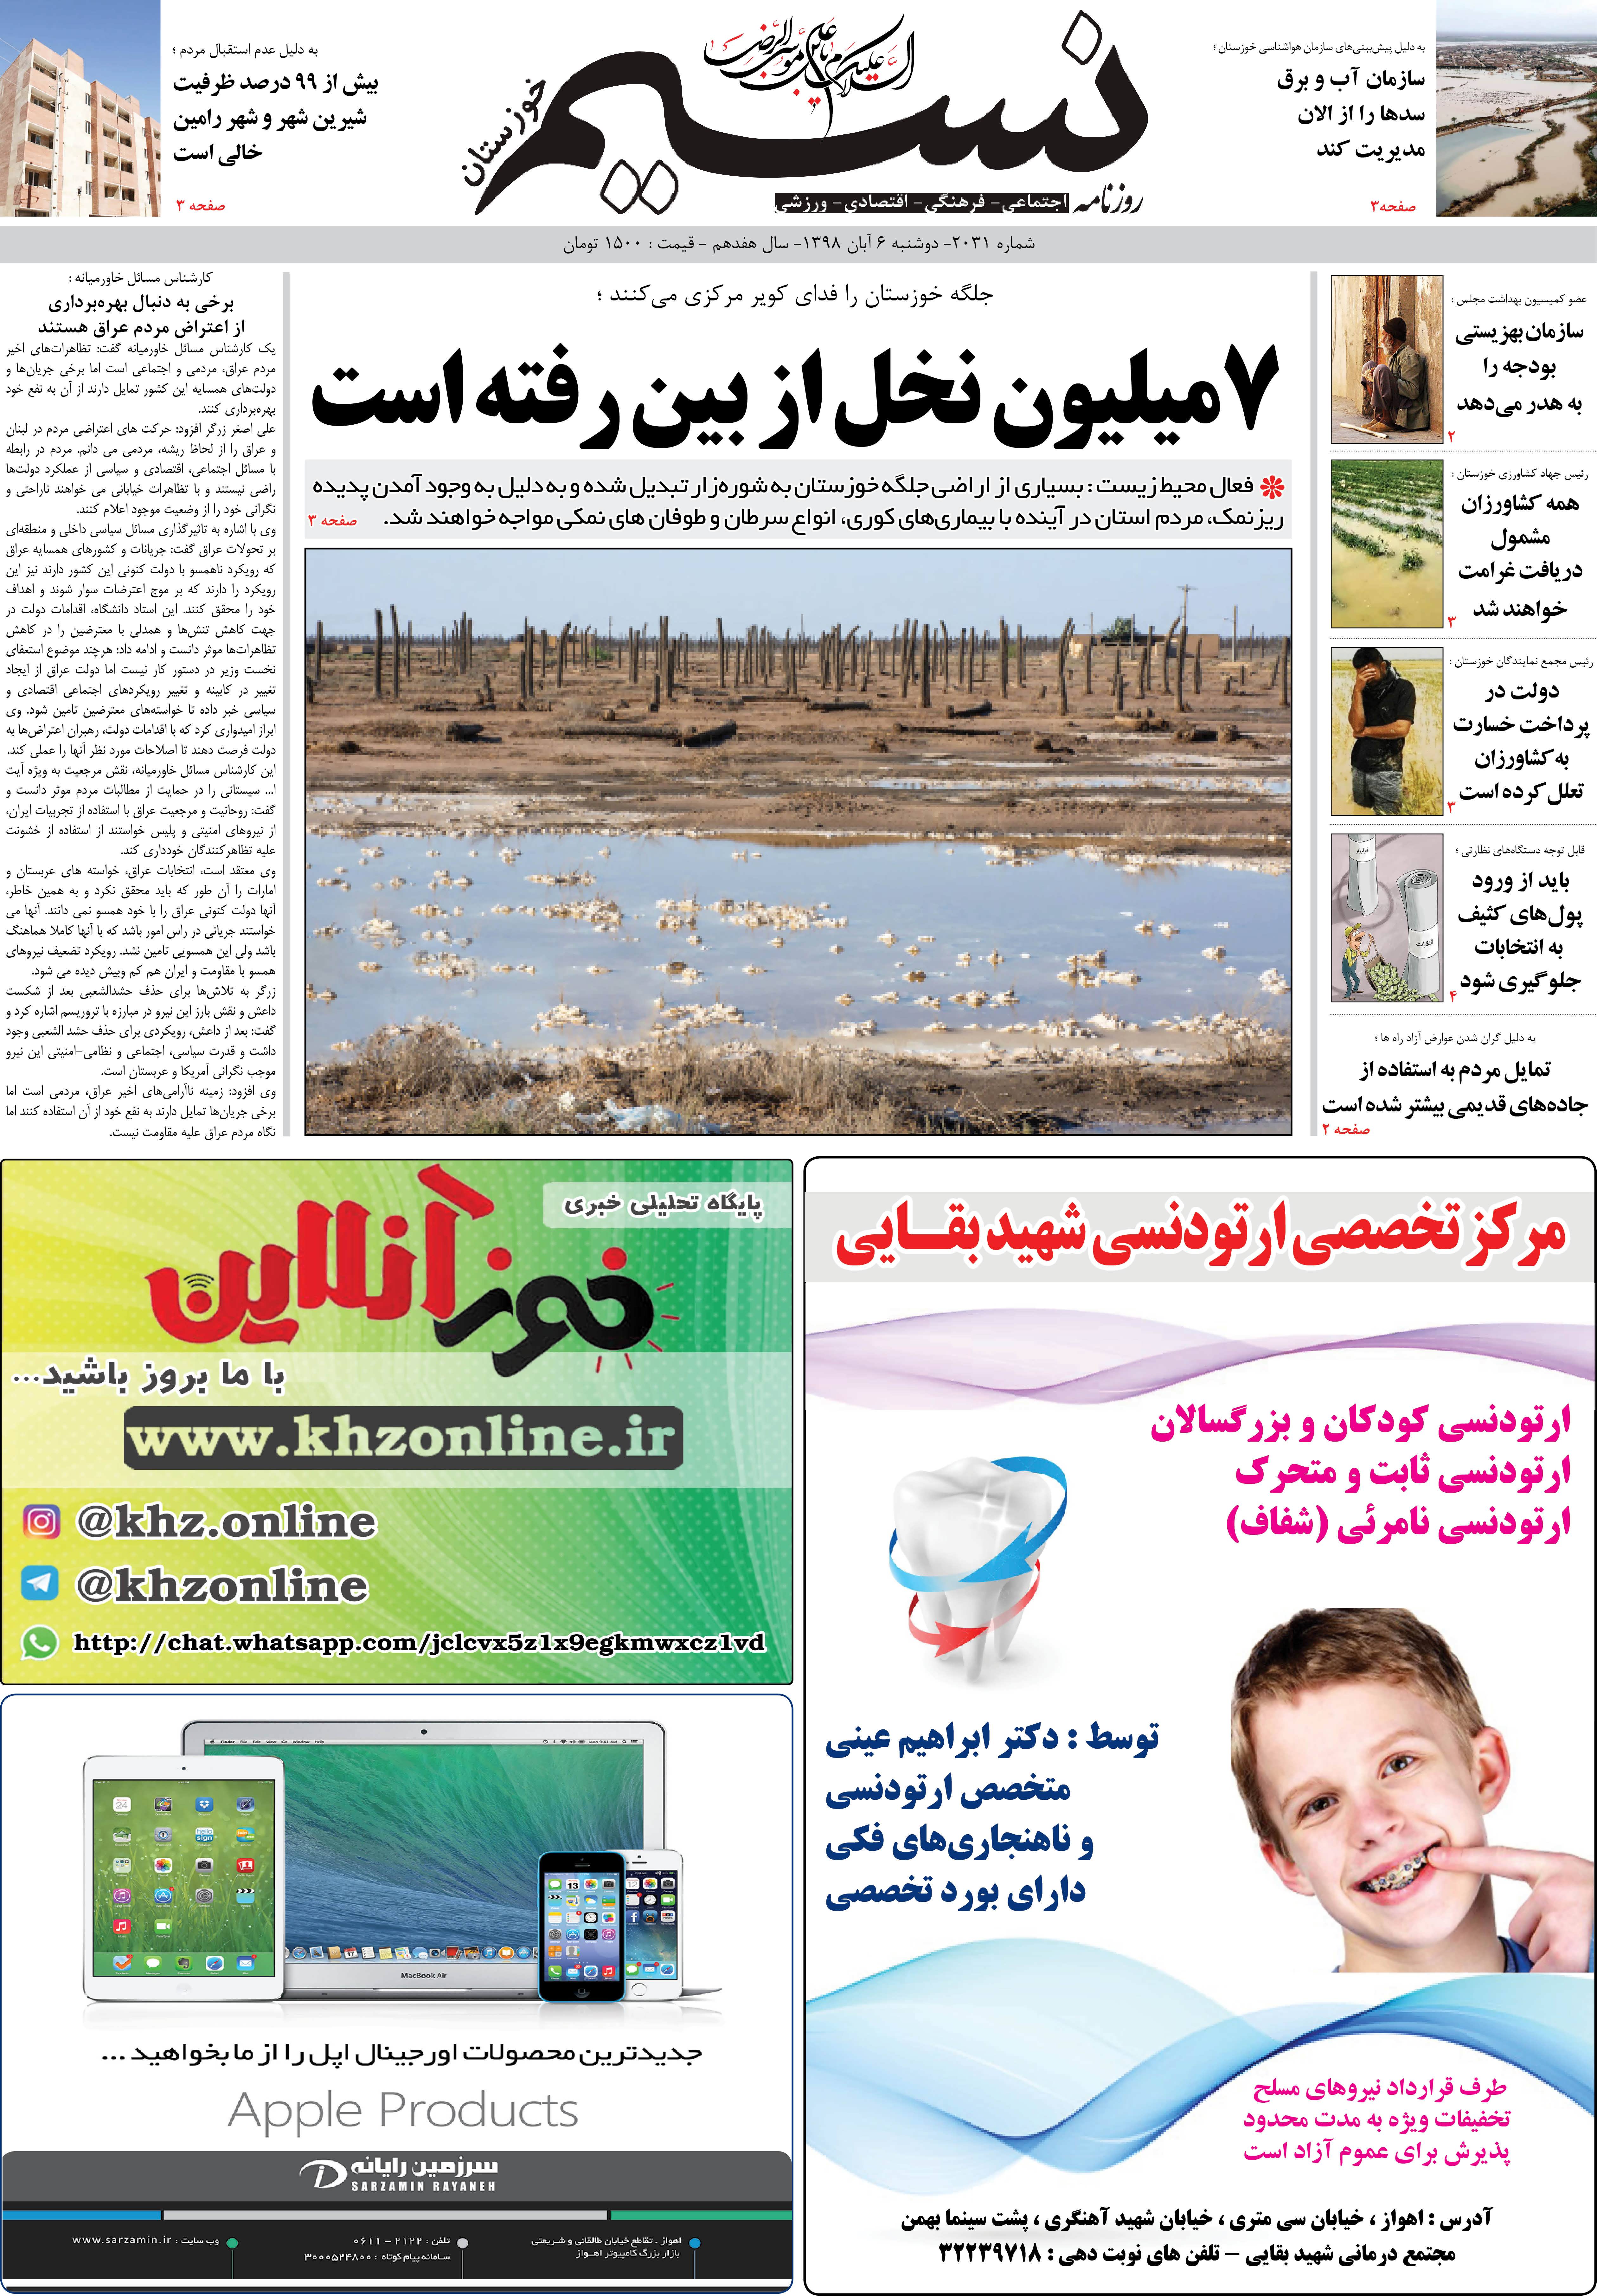 صفحه اصلی روزنامه نسیم شماره 2031 